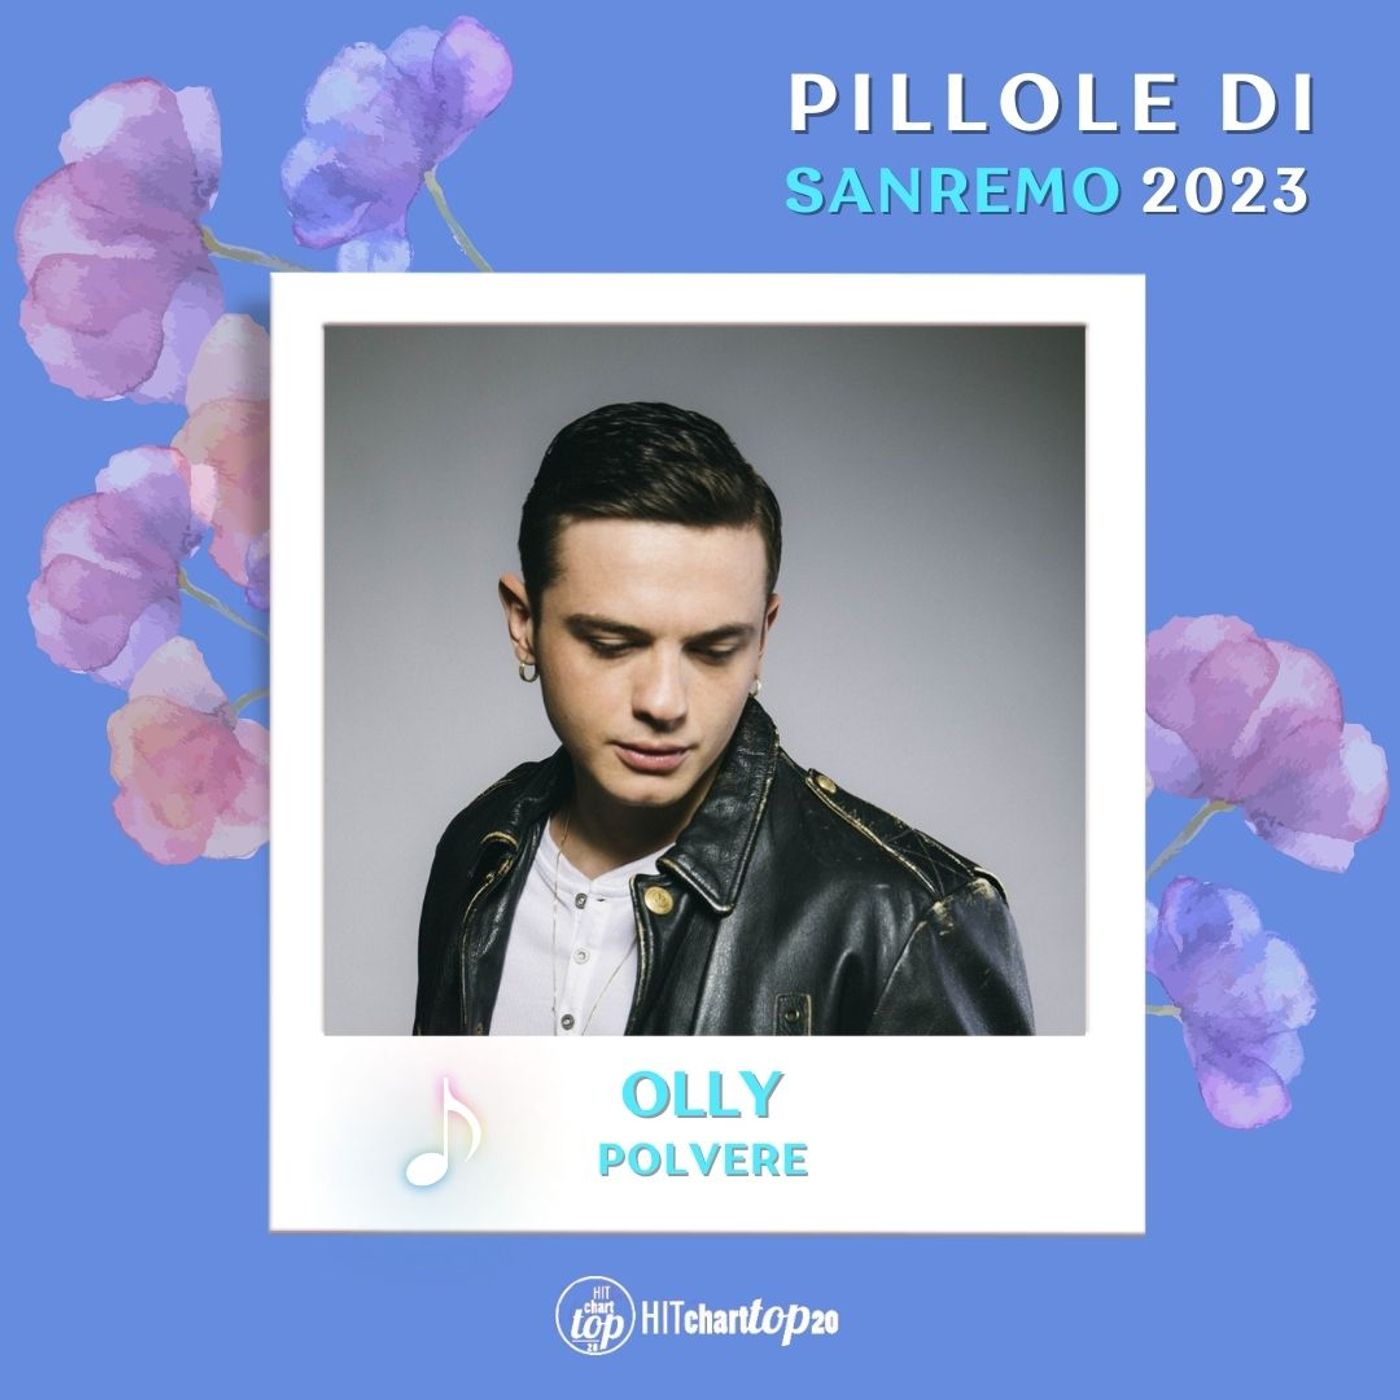 Pillole di Sanremo 2023: Ep. 16 Olly